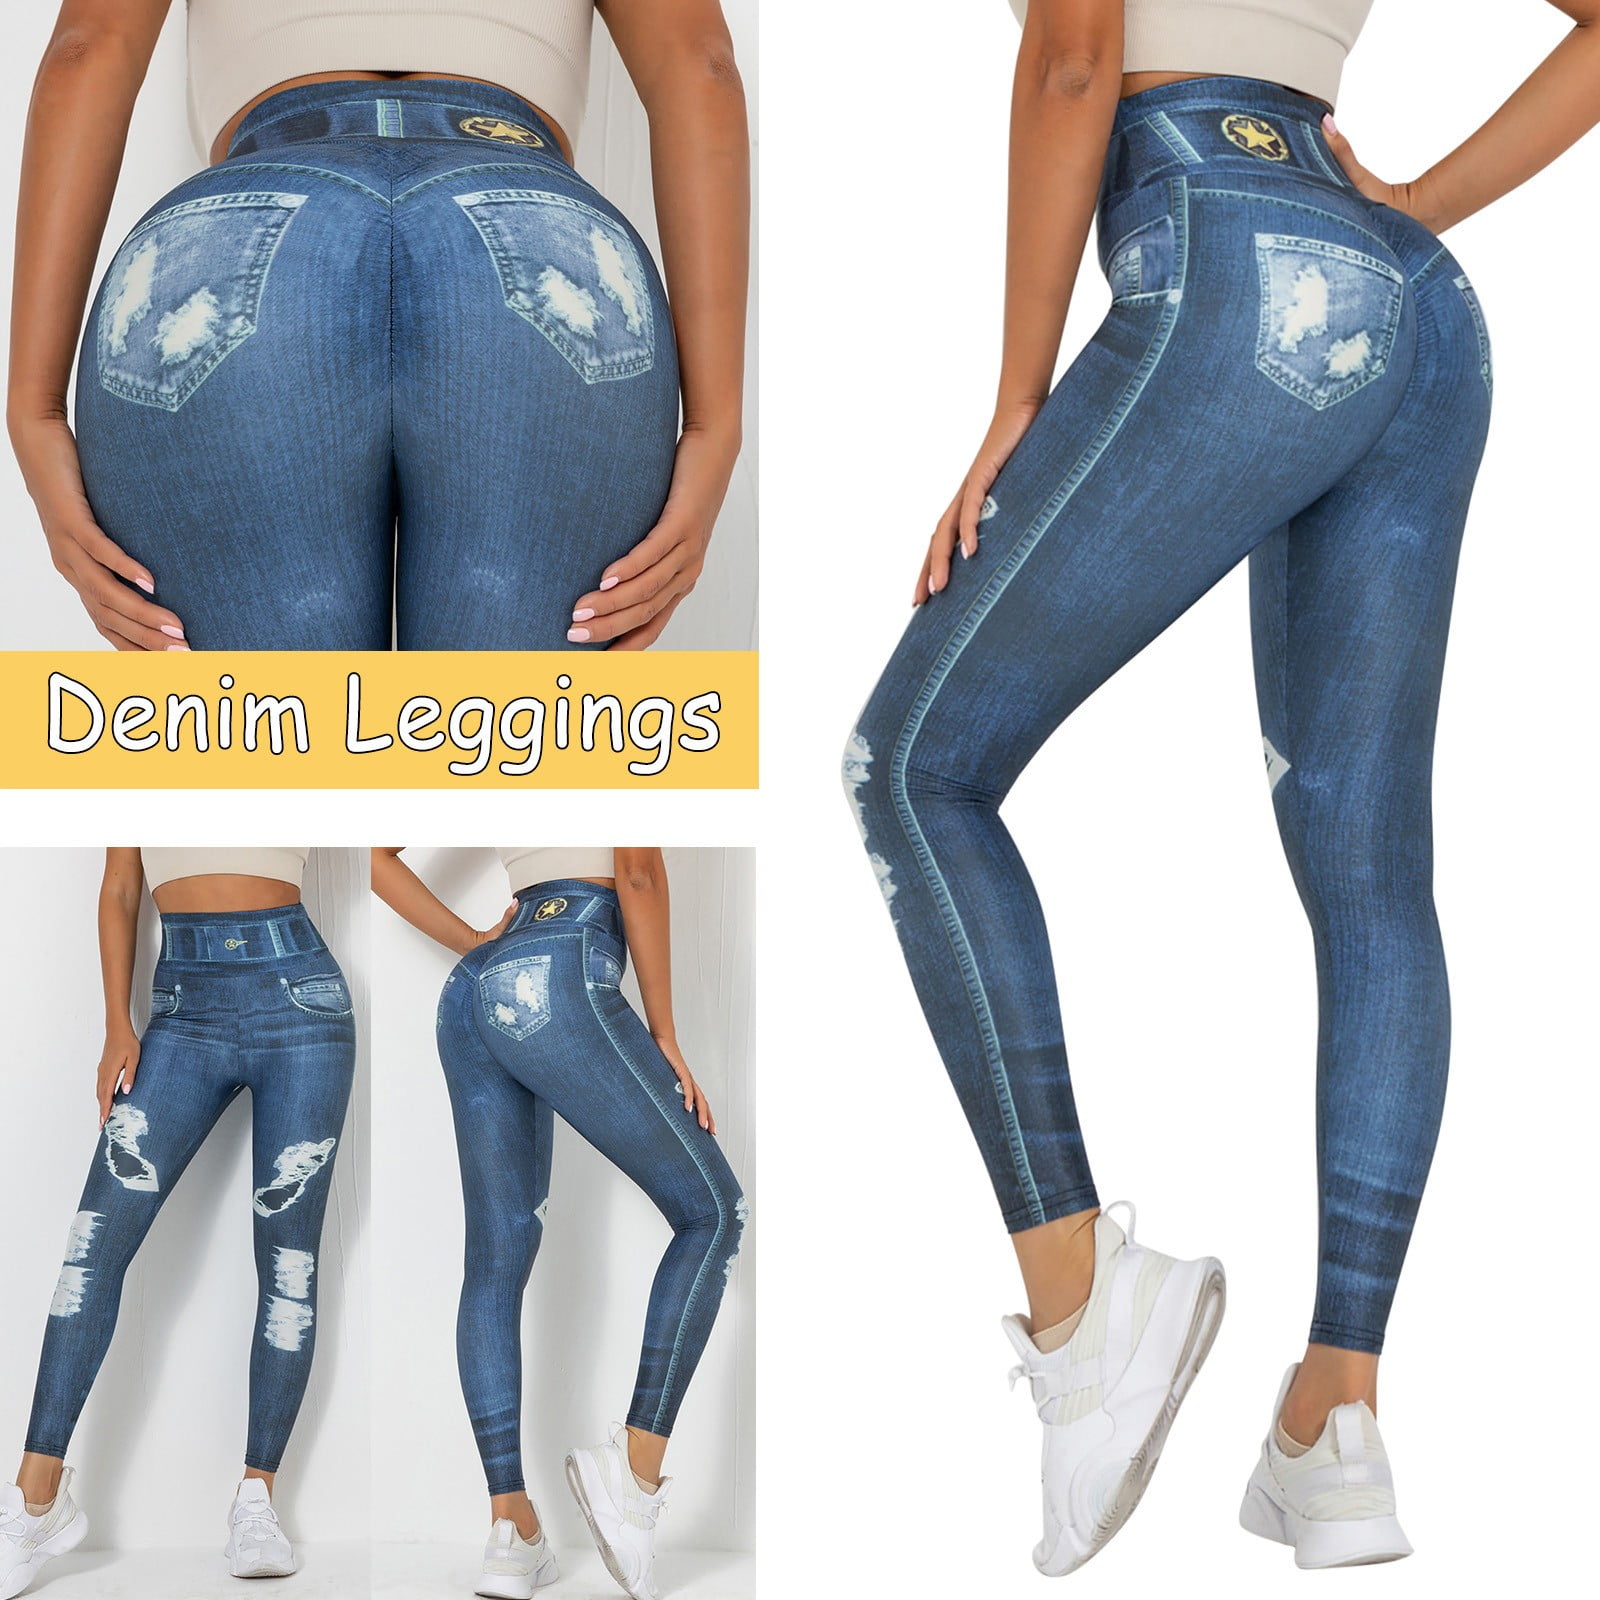 women leggings high waisted Women's Denim Print Jeans Look Like Leggings  Stretchy High Waist Slim Skinny Jeggings